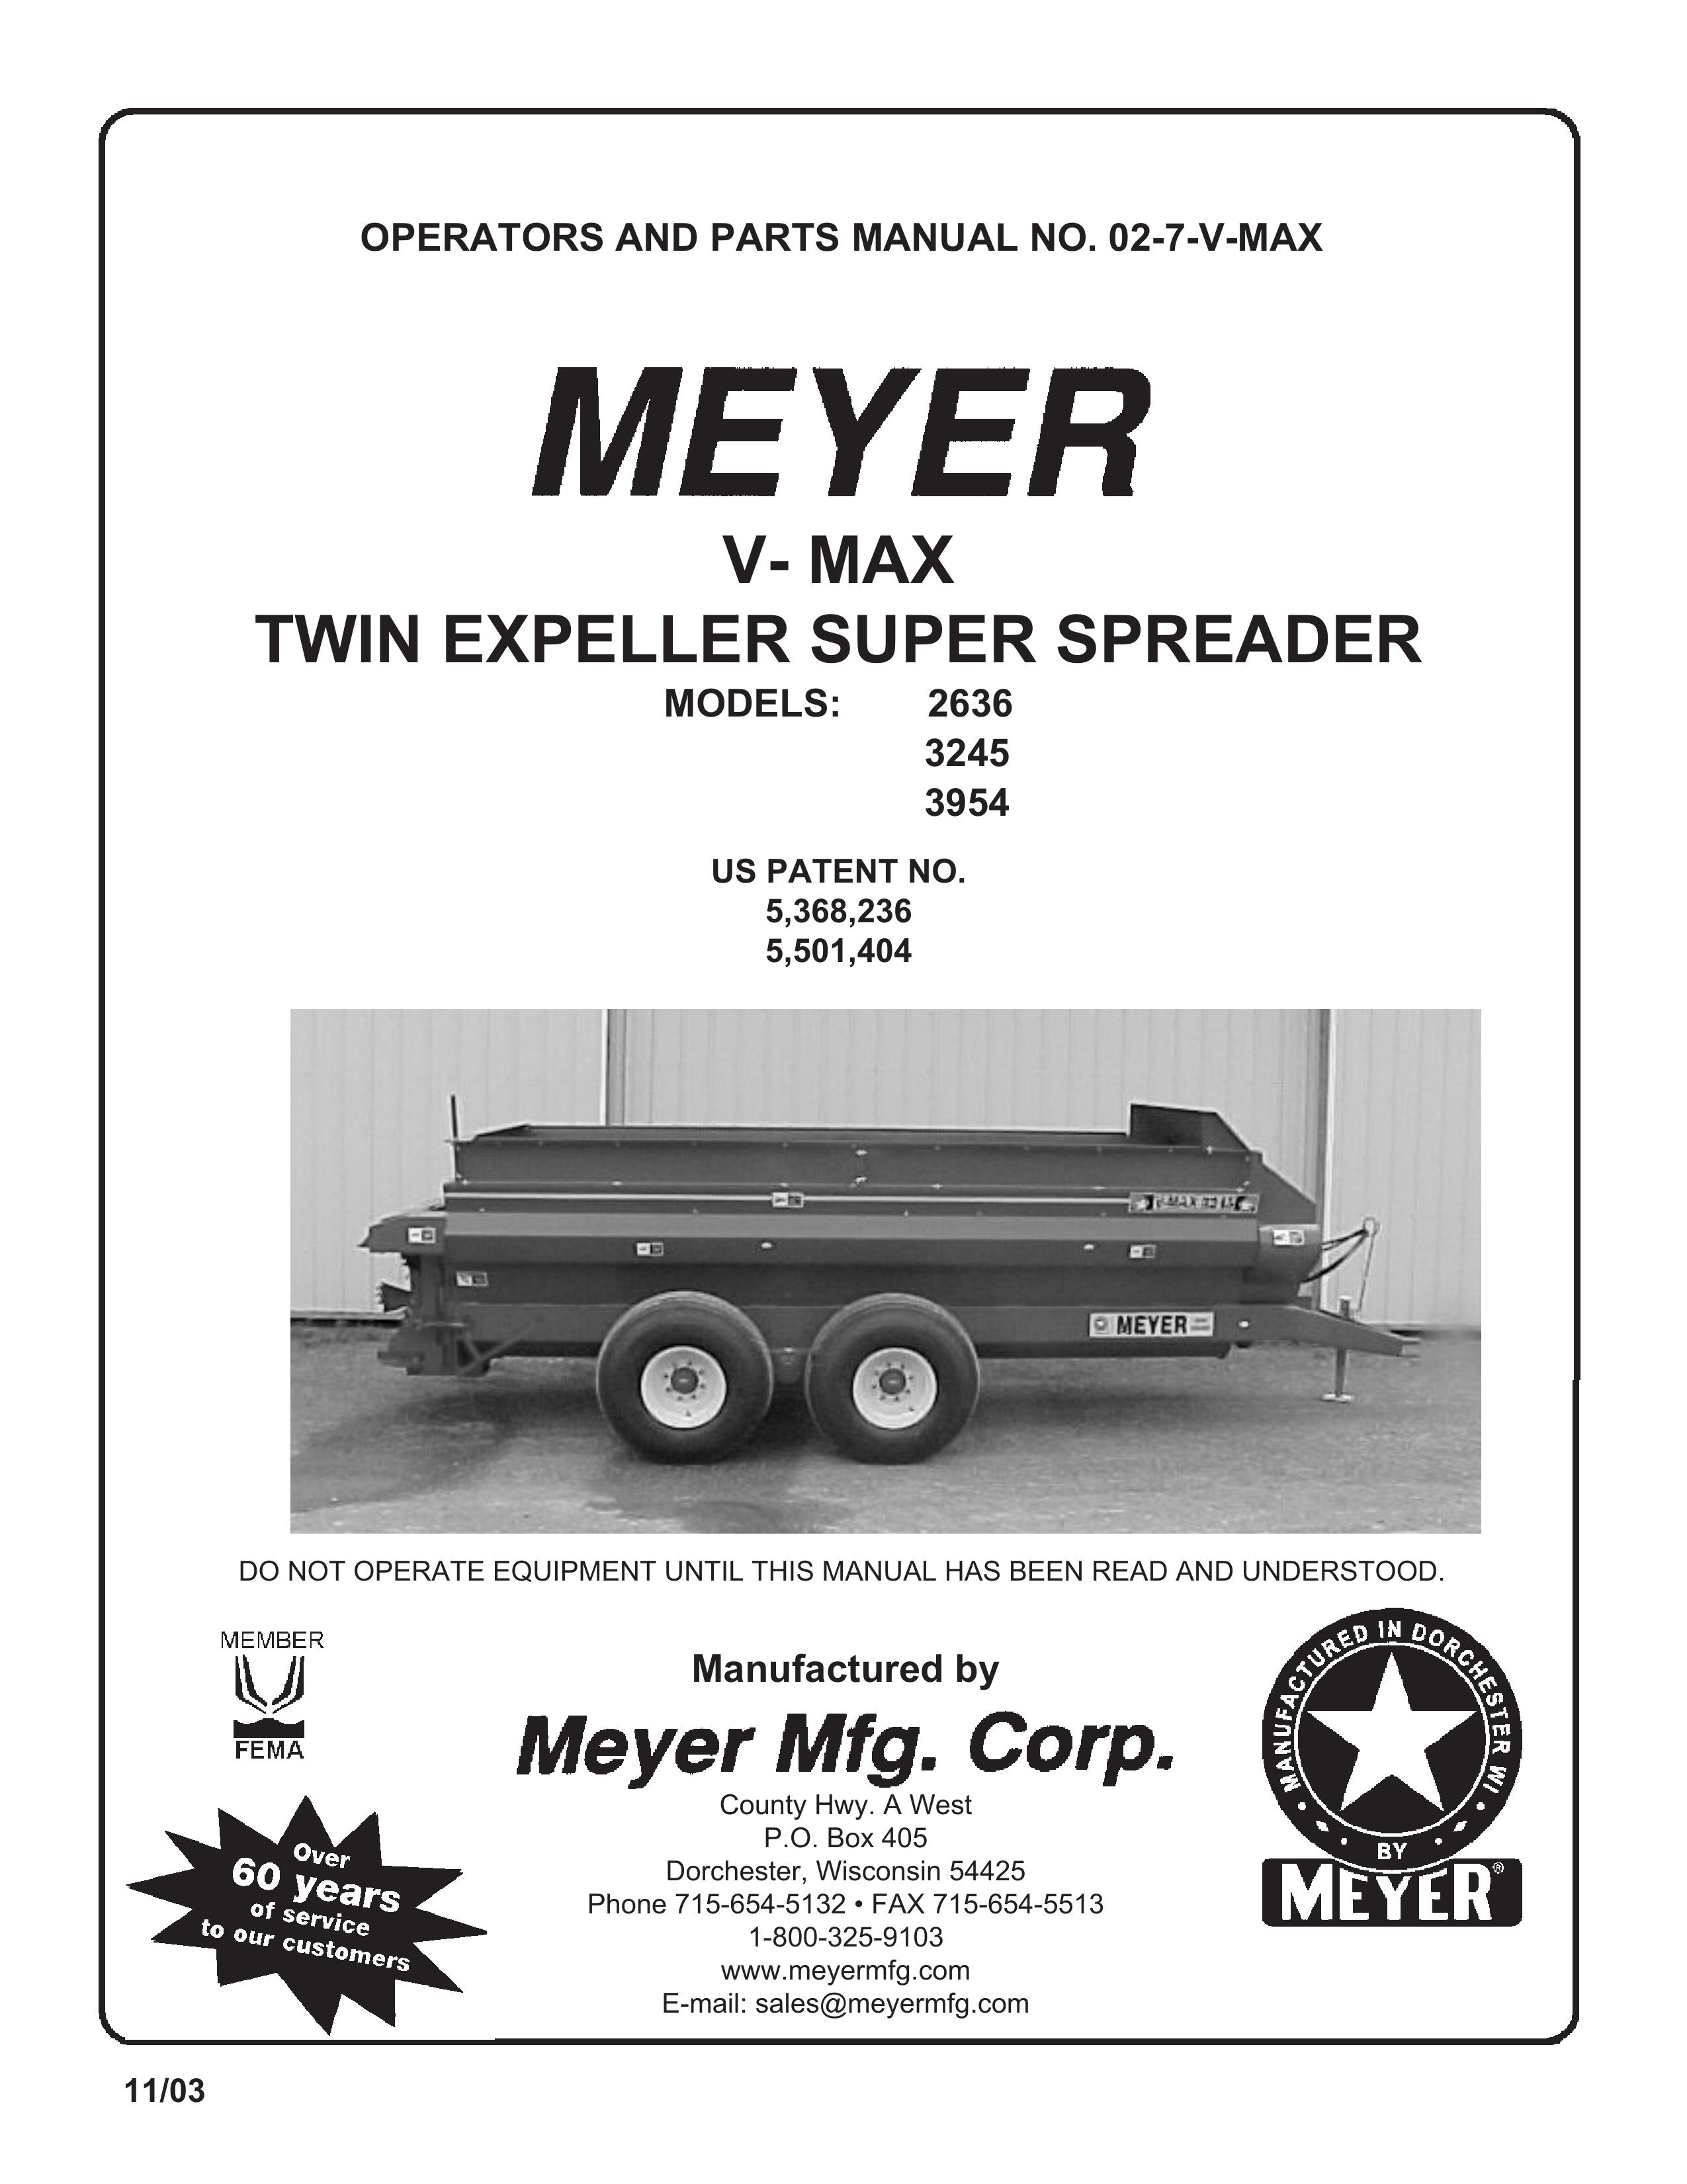 Meyer 3954 Spreader User Manual